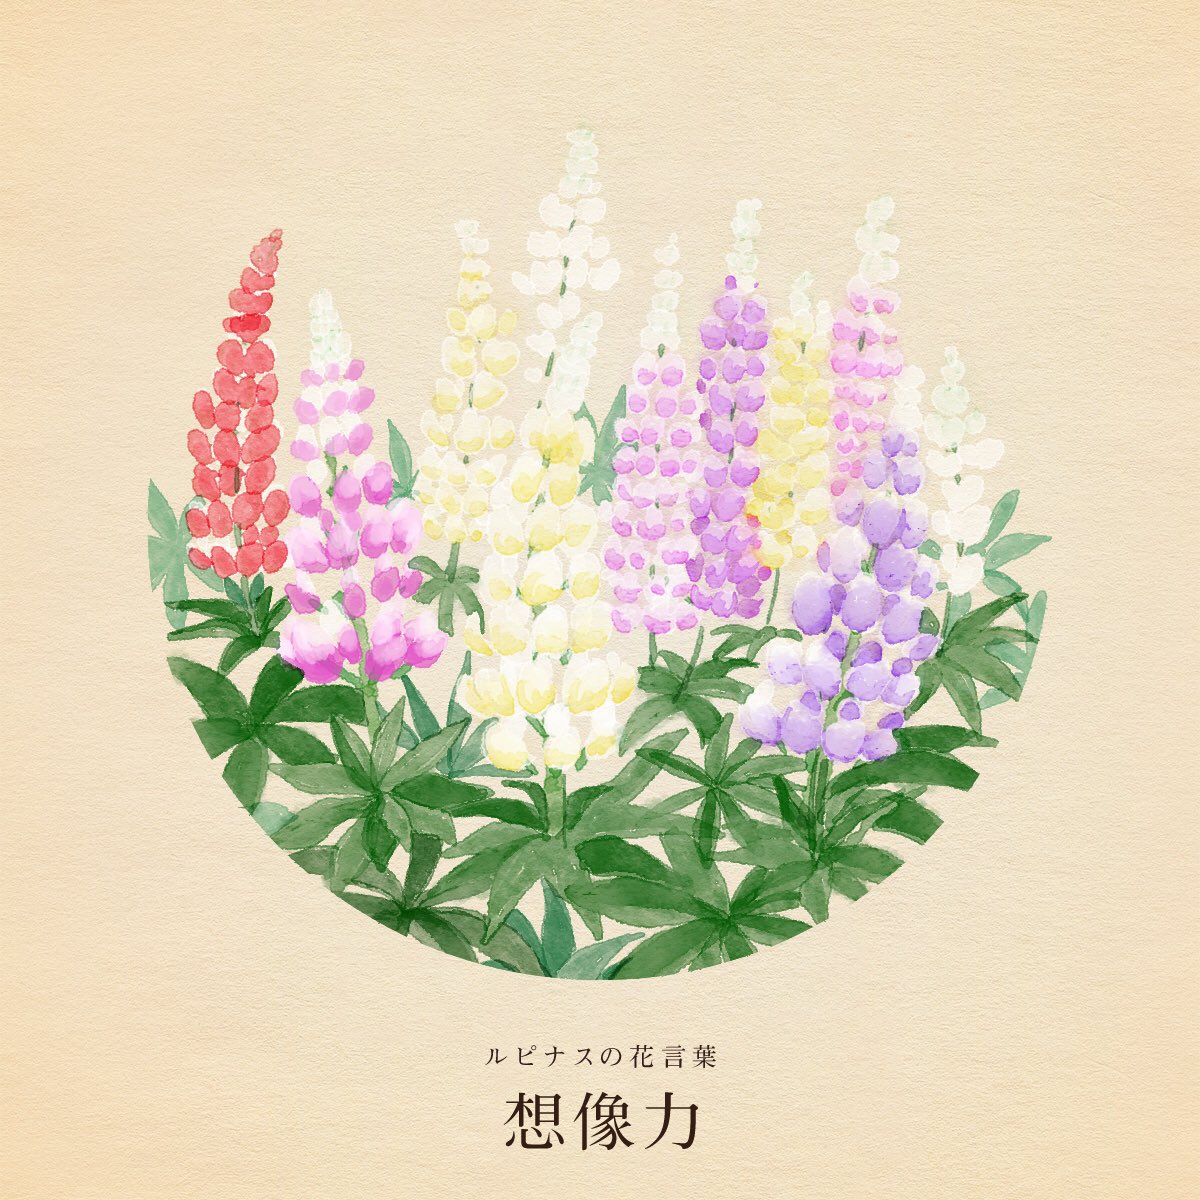 きょう5月31日は 世界禁煙デー 青峰忌 古材の日 藻岩山の日 土方歳三の誕生日 クリント イーストウッドの誕生日 誕生花はルピナス 花言葉は 想像力